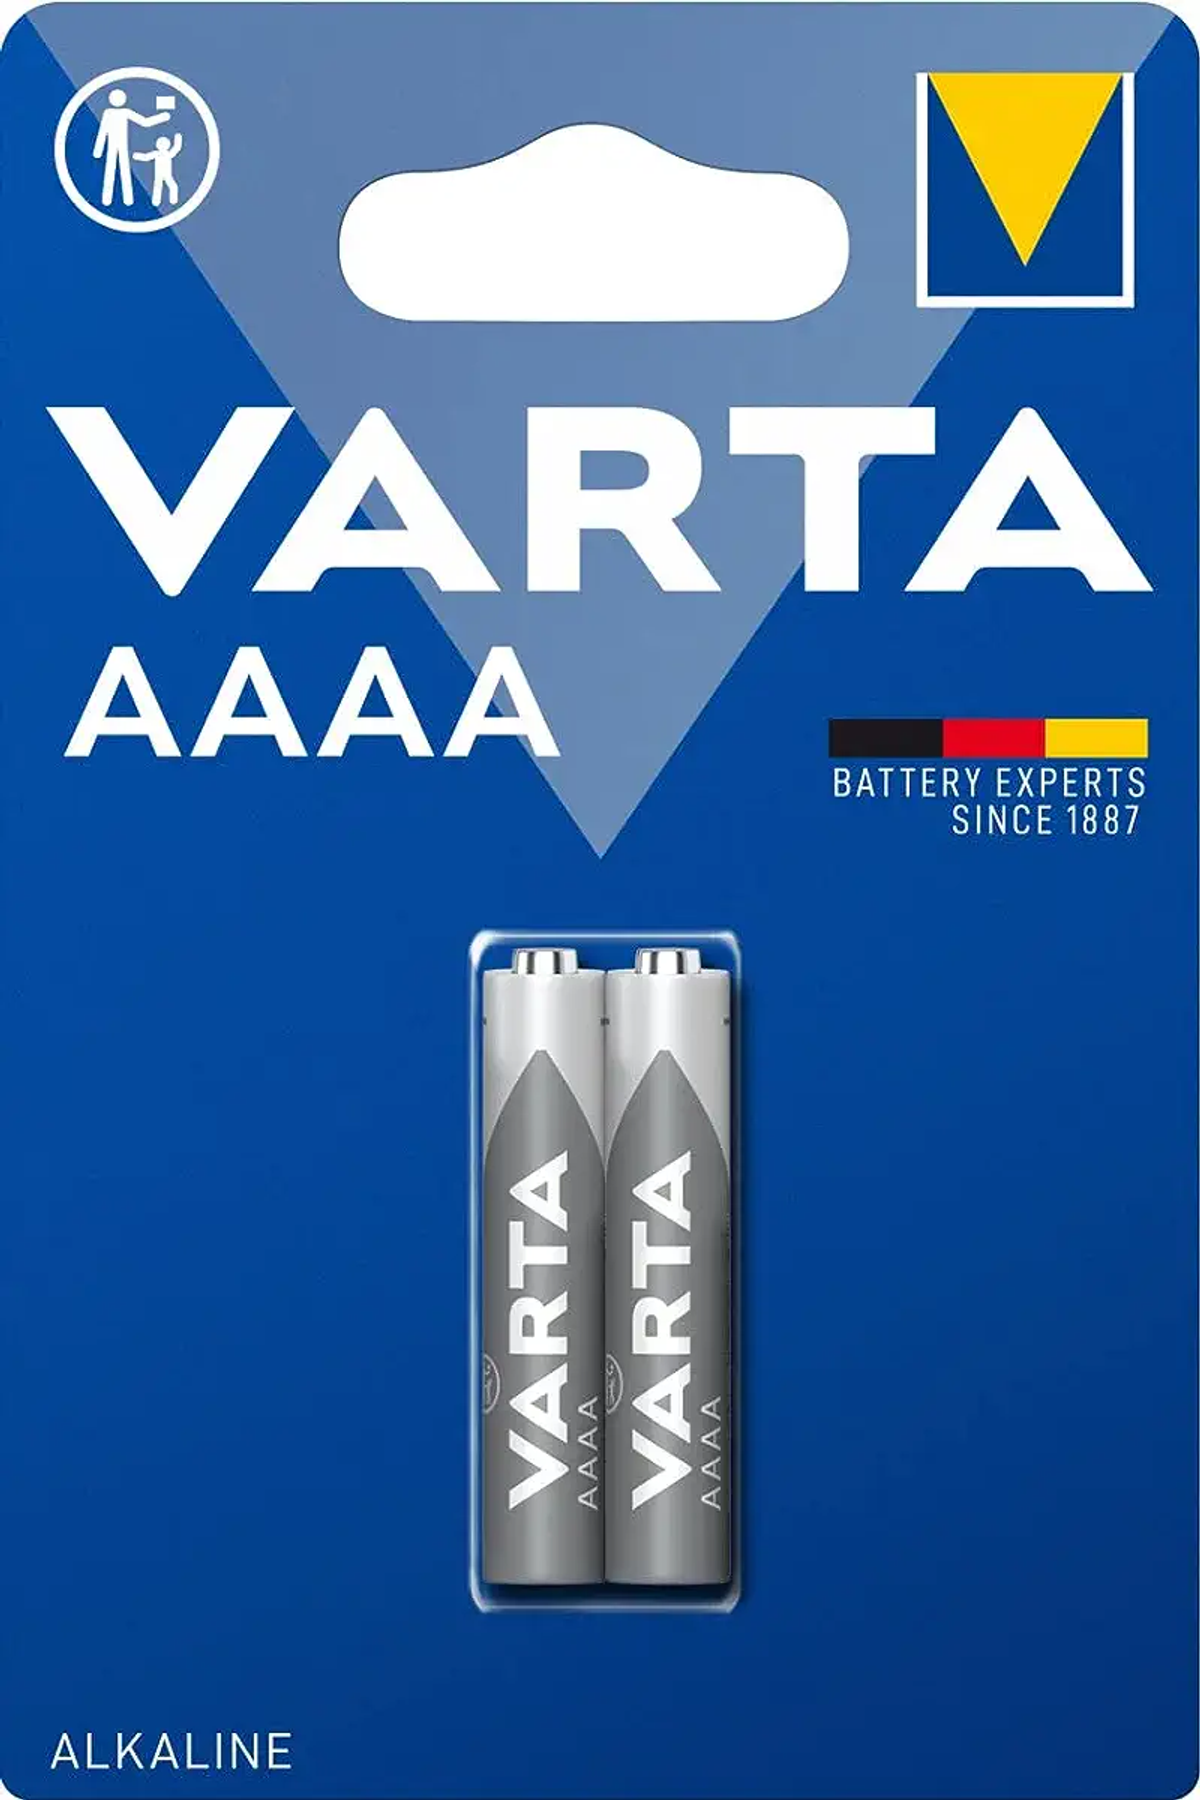 Stück 1,0 AAAA 640 1.5 Electronics Blister) Batterie Mando (2er VARTA Volt, Alkaline, Batterie, distancia Mini